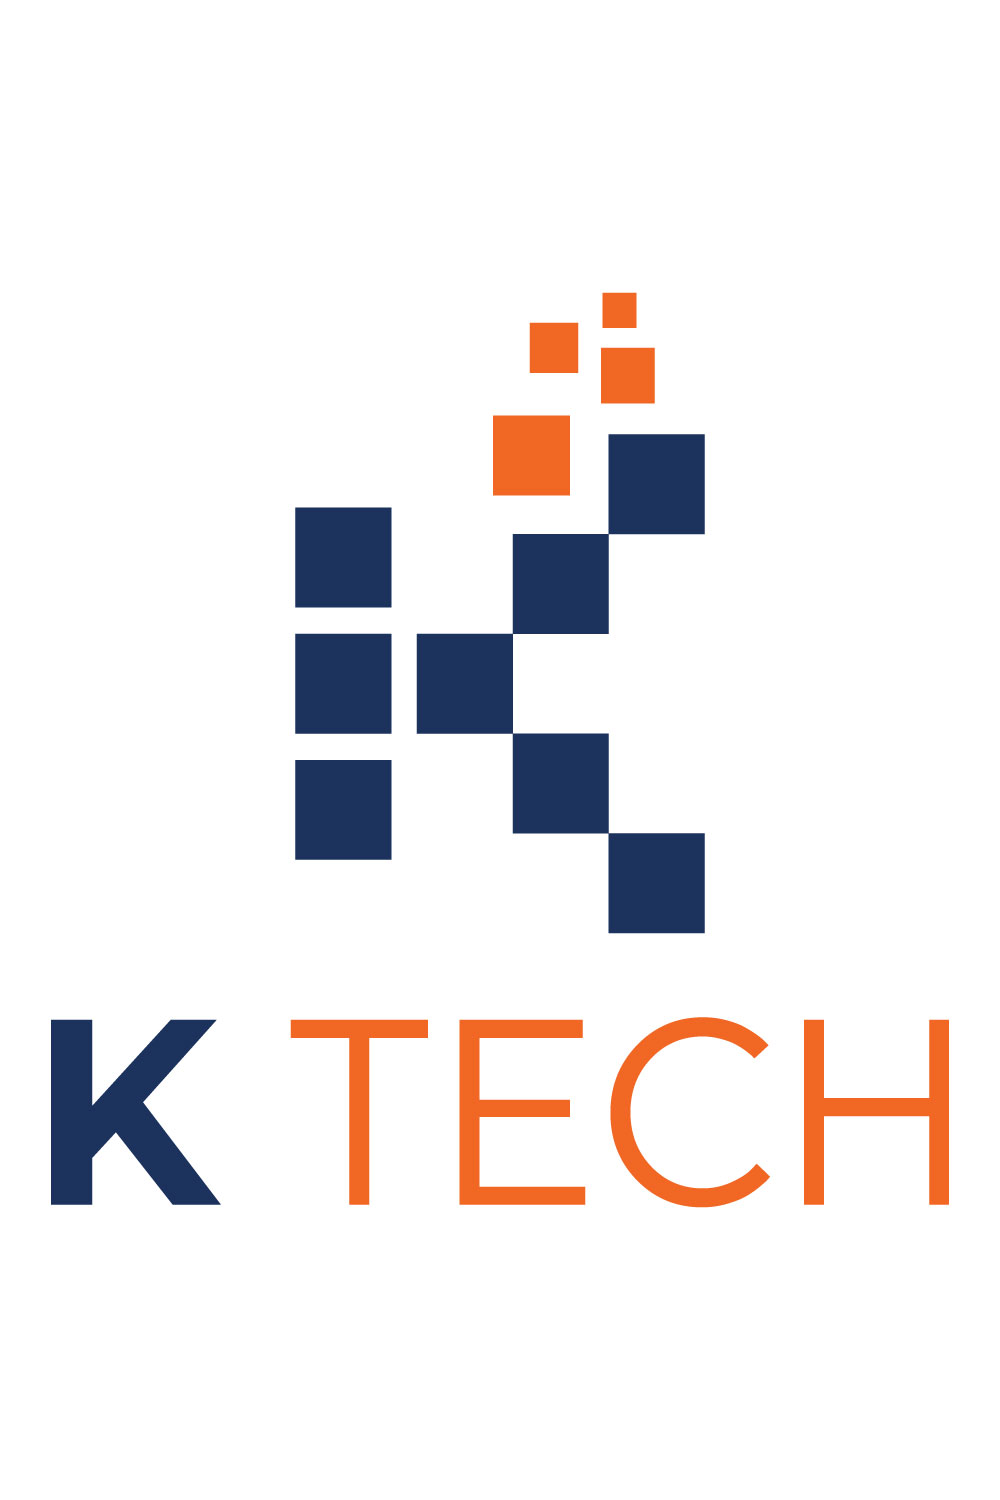 K Letter Logo Design Template pinterest image.